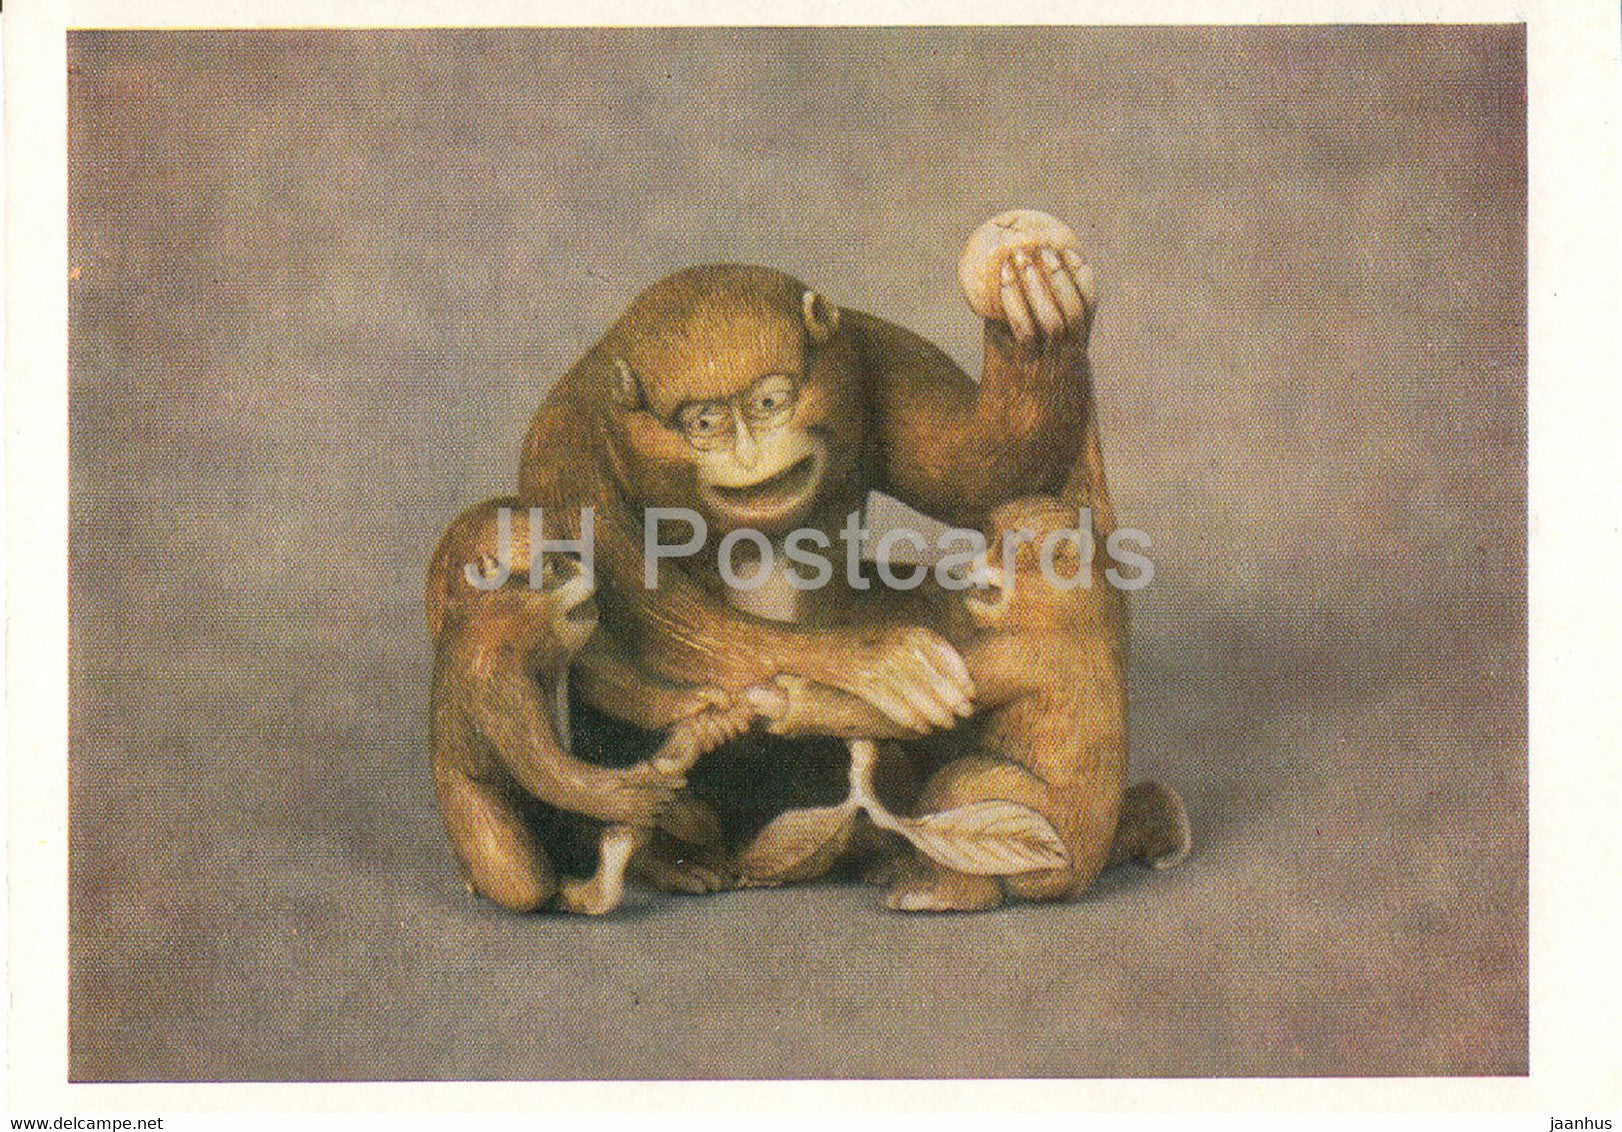 Netsuke - Monkey with cubs - bone - Japanese art - 1987 - Russia UUSR - unused - JH Postcards